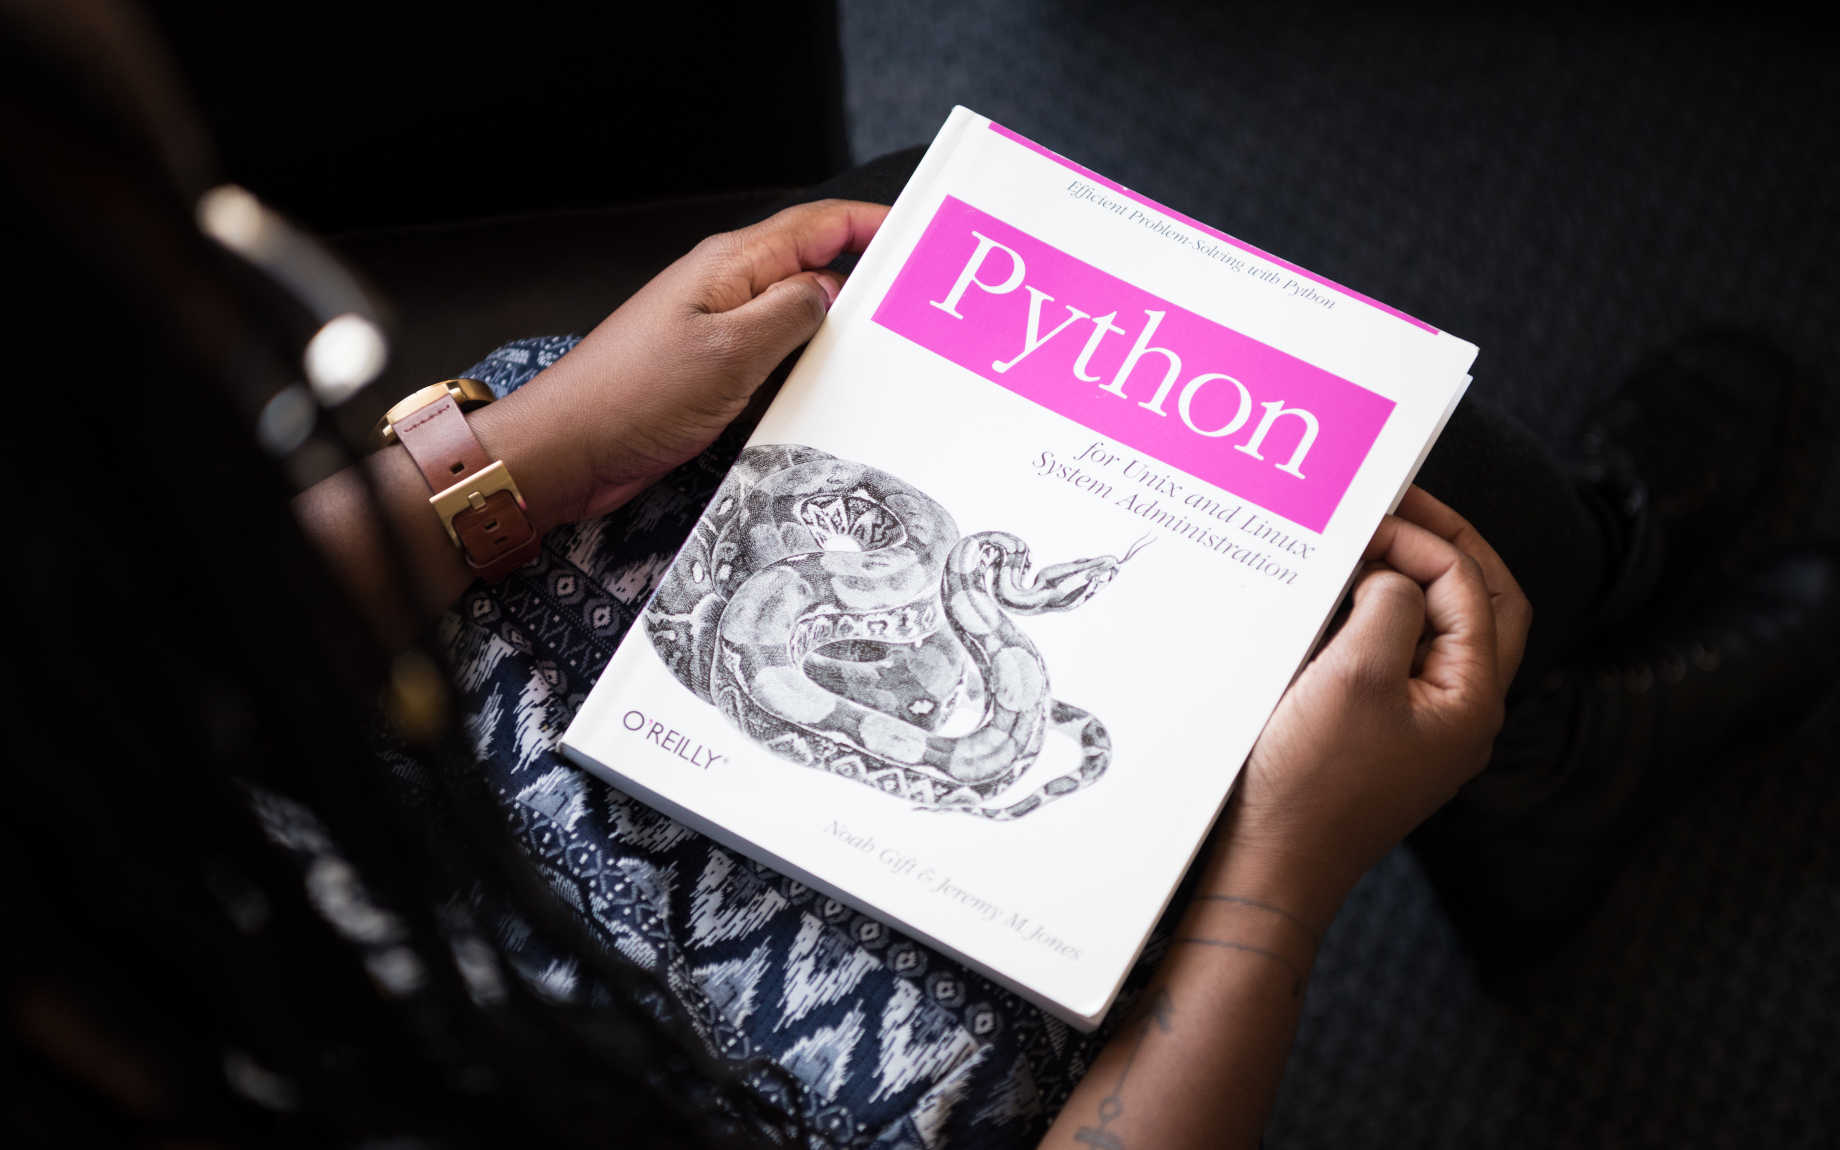 The Python Handbook